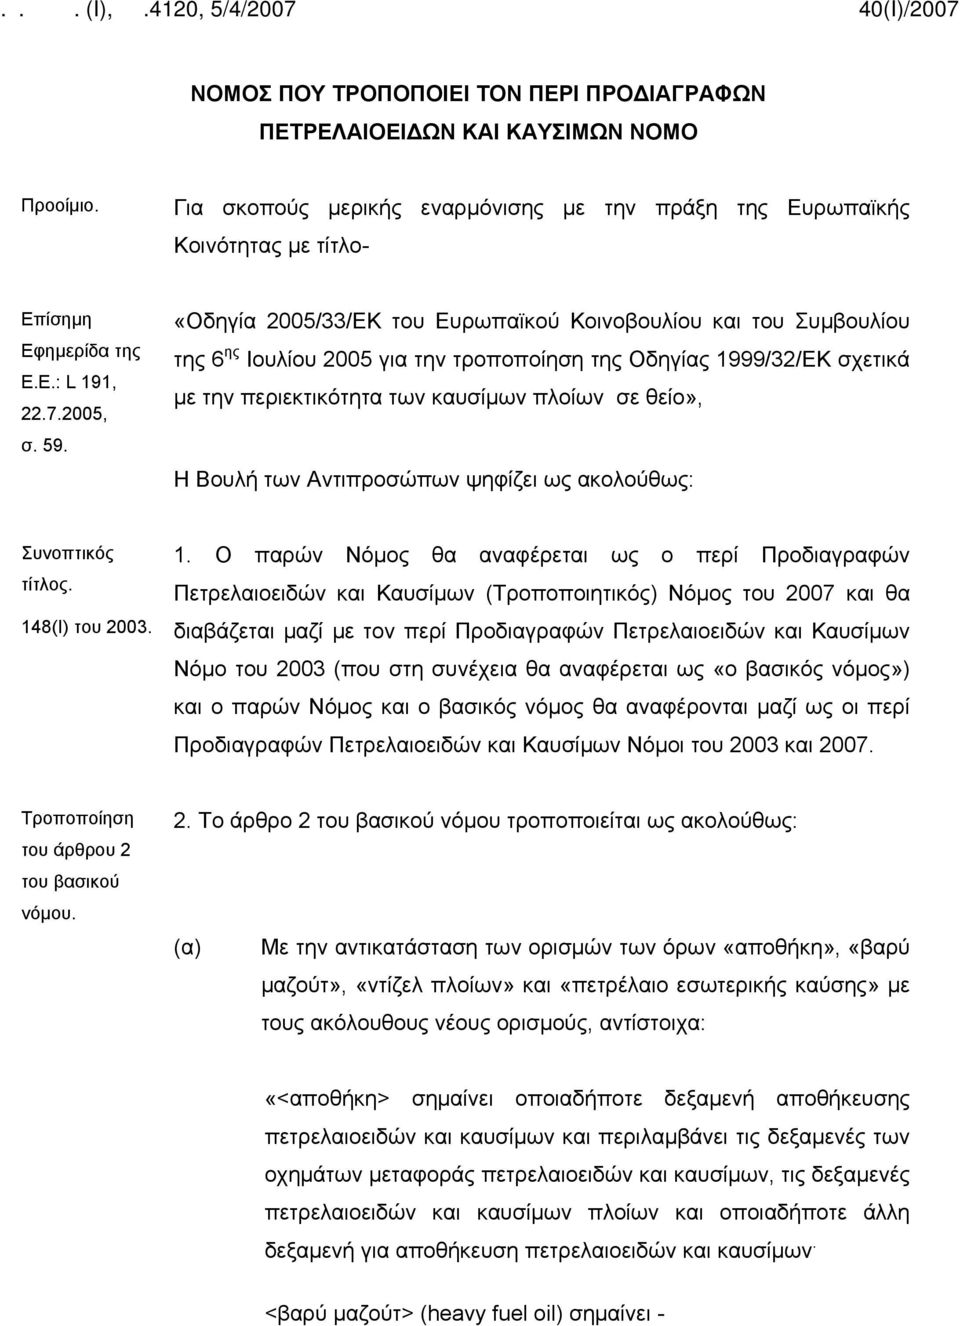 «Οδηγία 2005/33/ΕΚ του Ευρωπαϊκού Κοινοβουλίου και του Συμβουλίου της 6 ης Ιουλίου 2005 για την τροποποίηση της Οδηγίας 1999/32/ΕΚ σχετικά με την περιεκτικότητα των καυσίμων πλοίων σε θείο», Η Βουλή